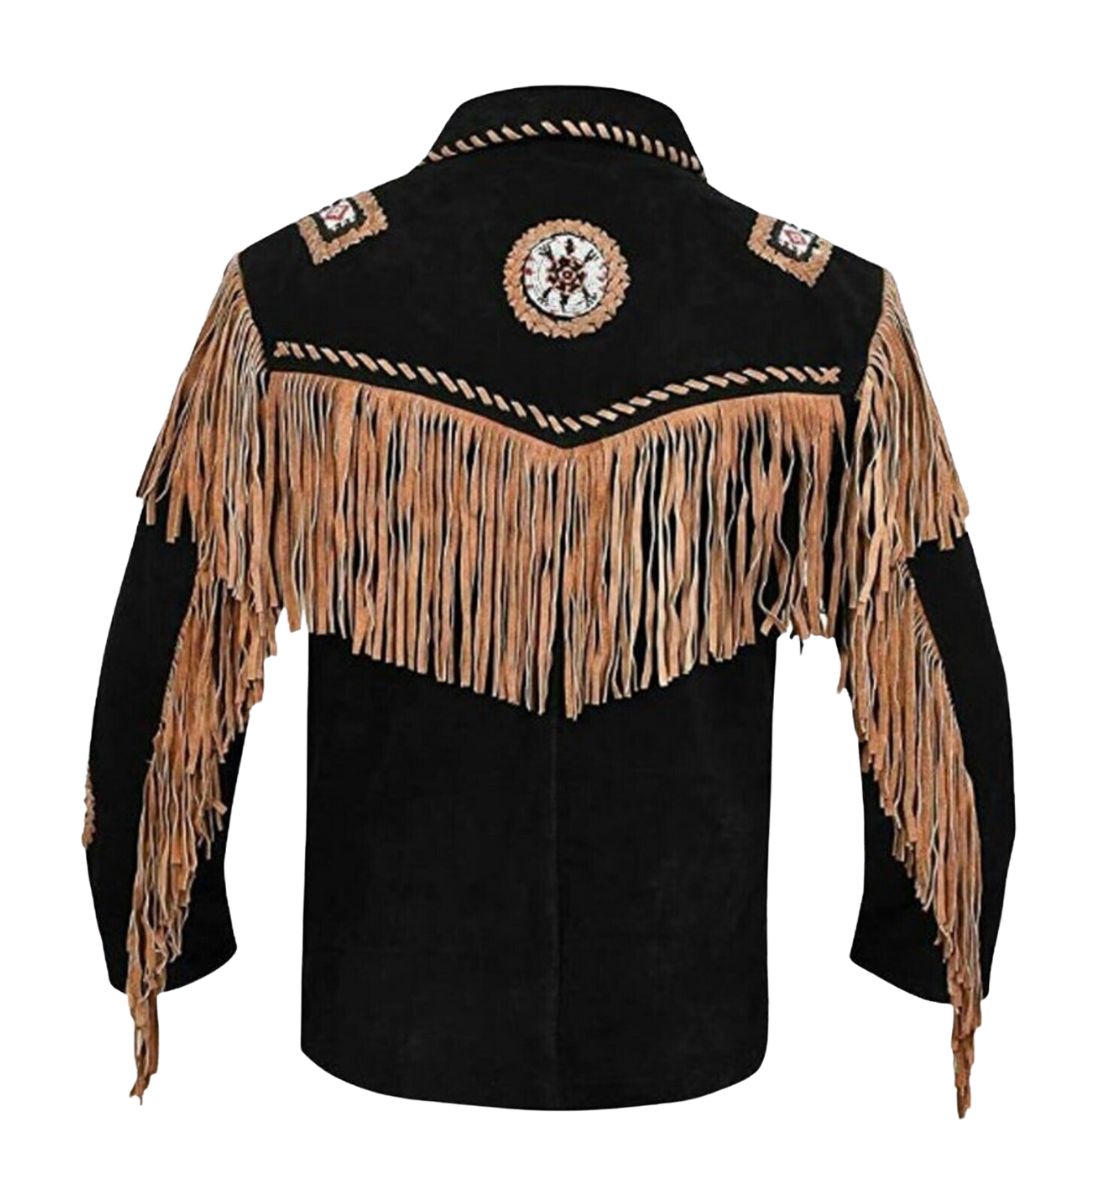 Authentic Native American Fringe Jacket